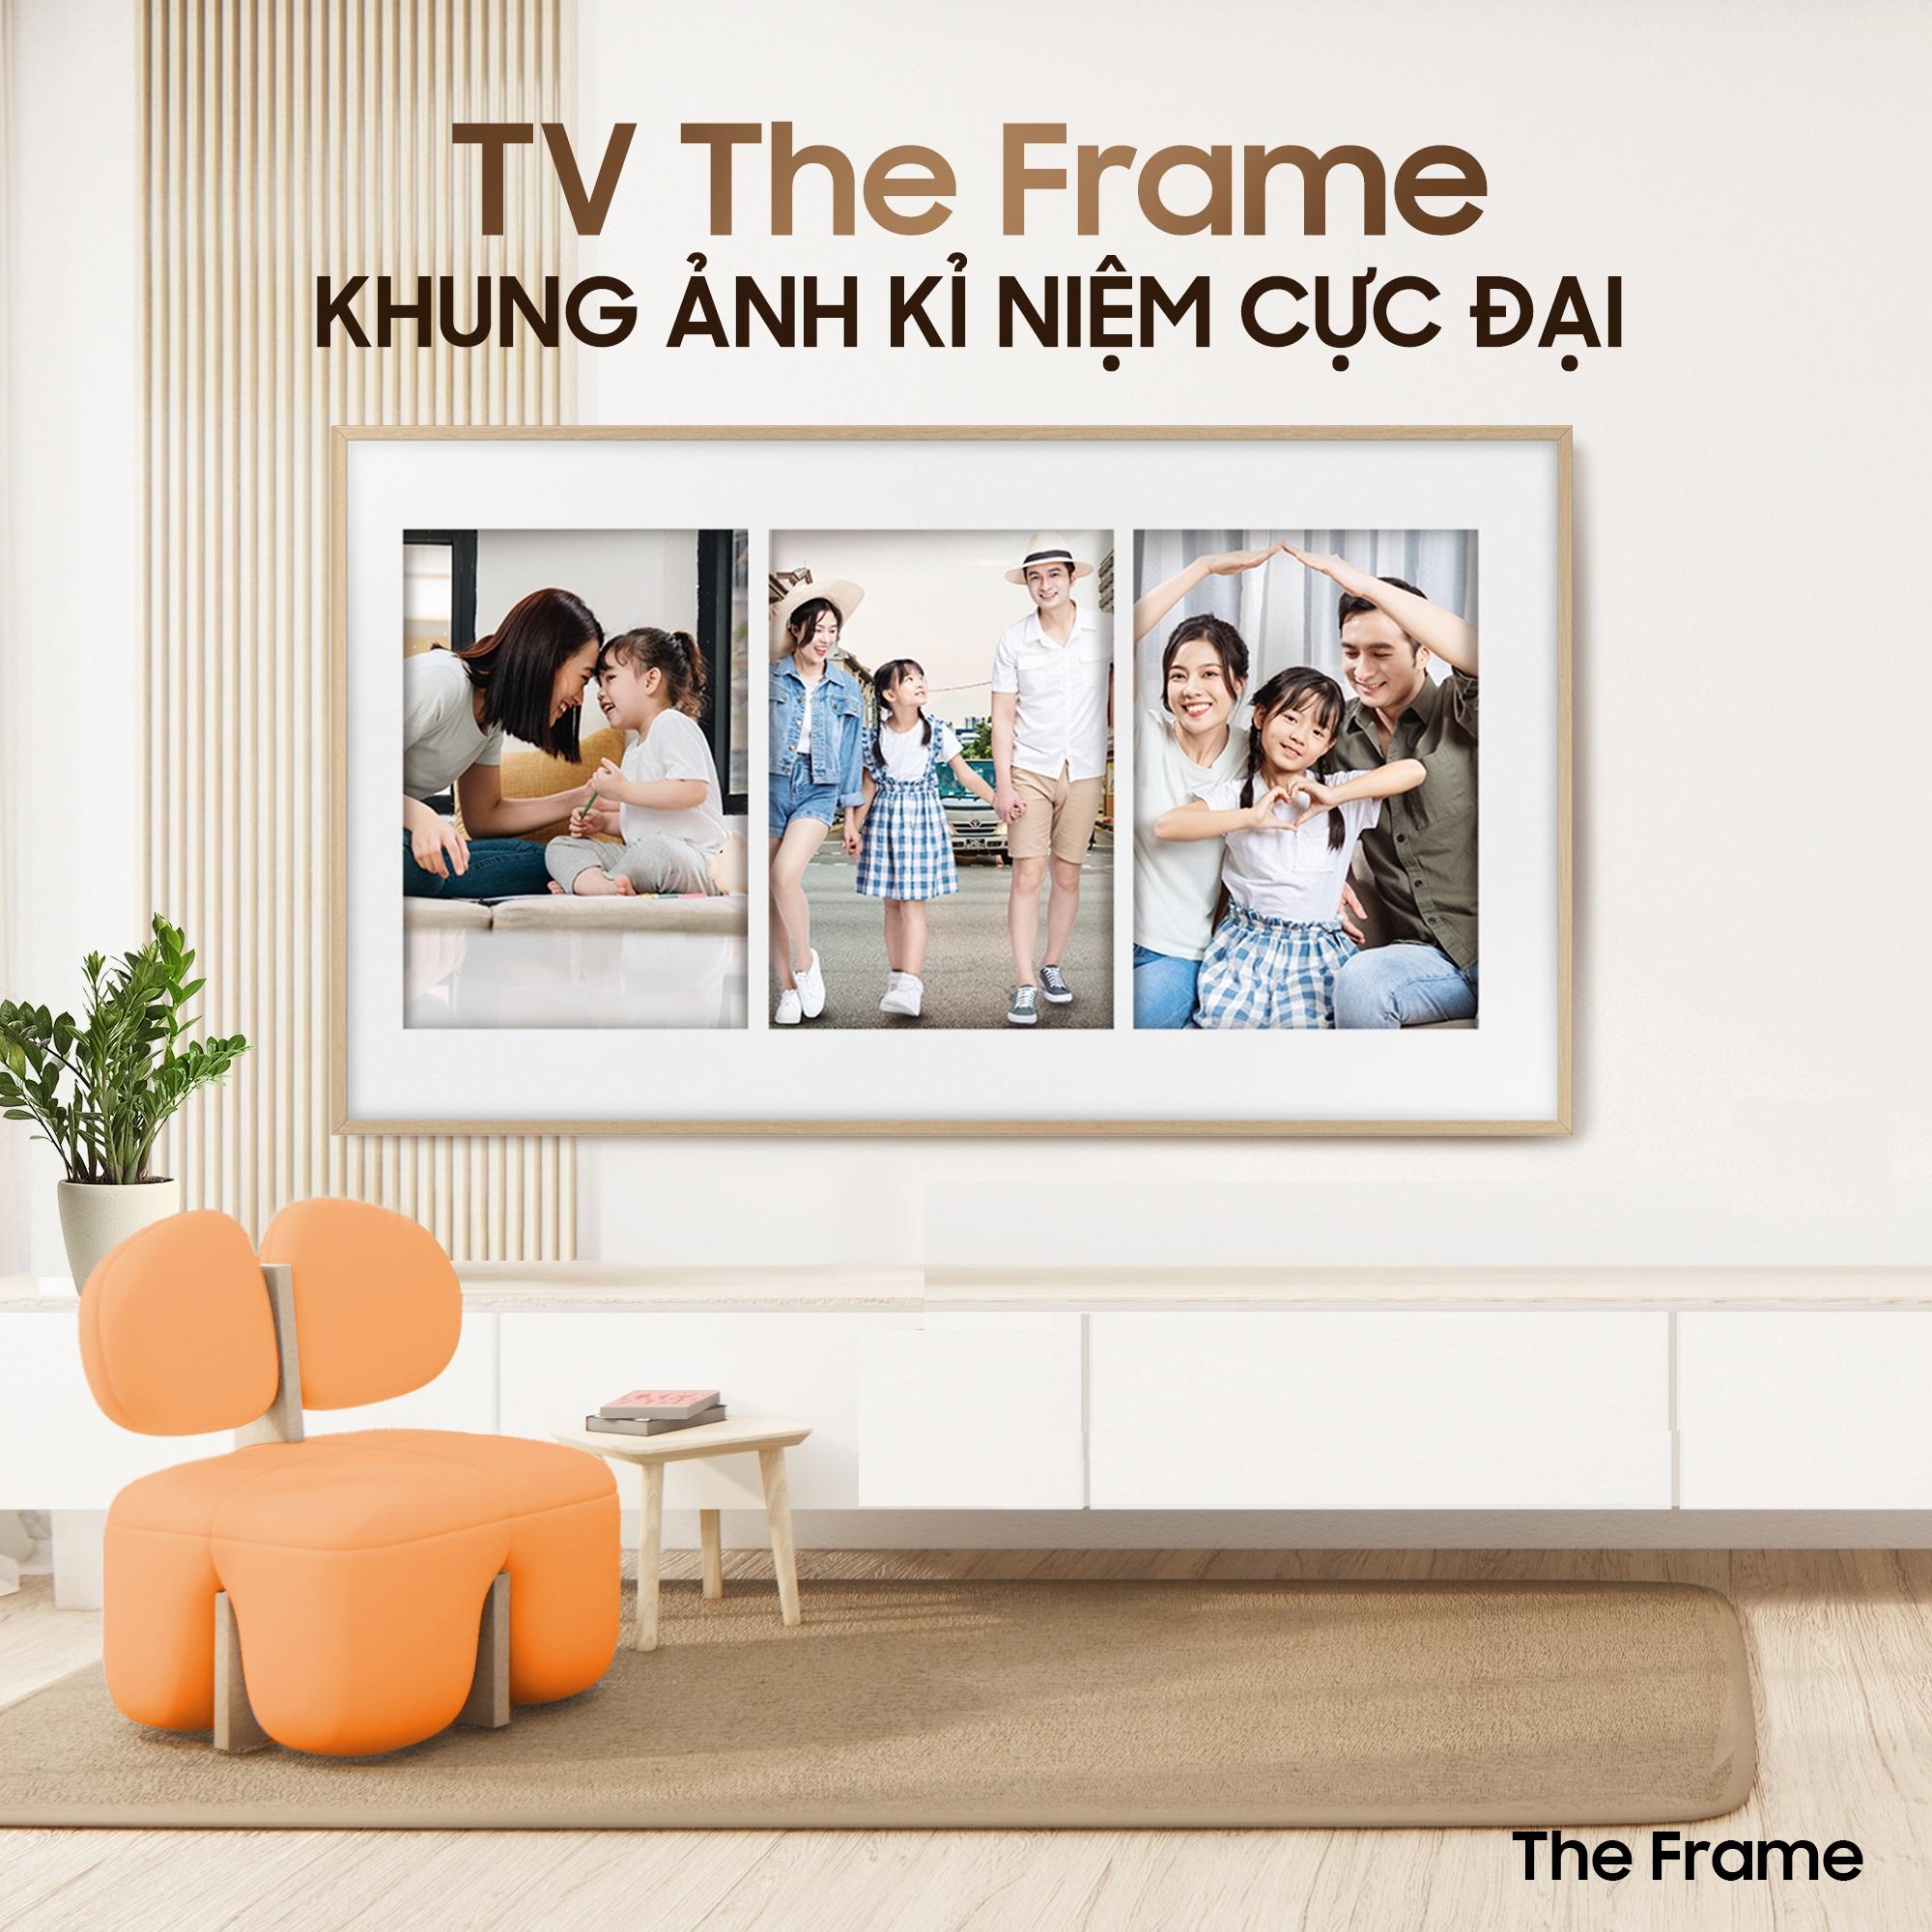 Tôn vinh Ngày Nhiếp ảnh Thế giới cùng TV khung tranh The Frame” - Ảnh 2.